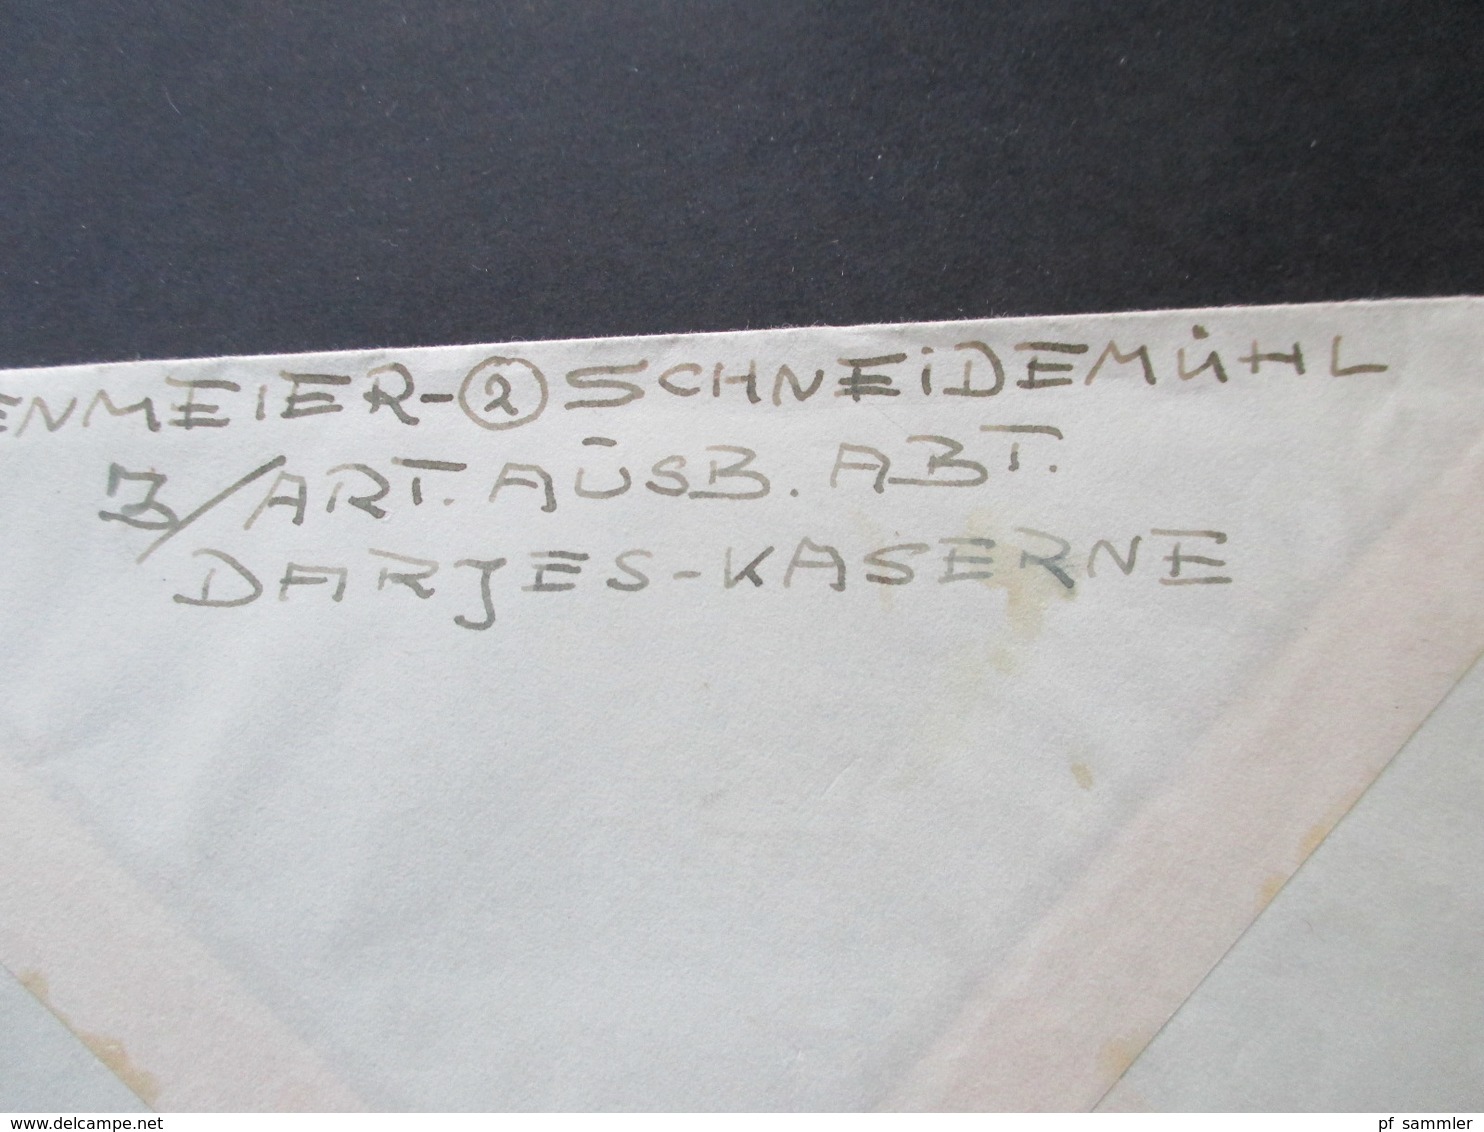 3. Reich 1944 Feldpost 2.WK Brief aus Schneidemühl Darjes Kaserne nach Mährisch Trübau im Sudetenland RAD 5/240